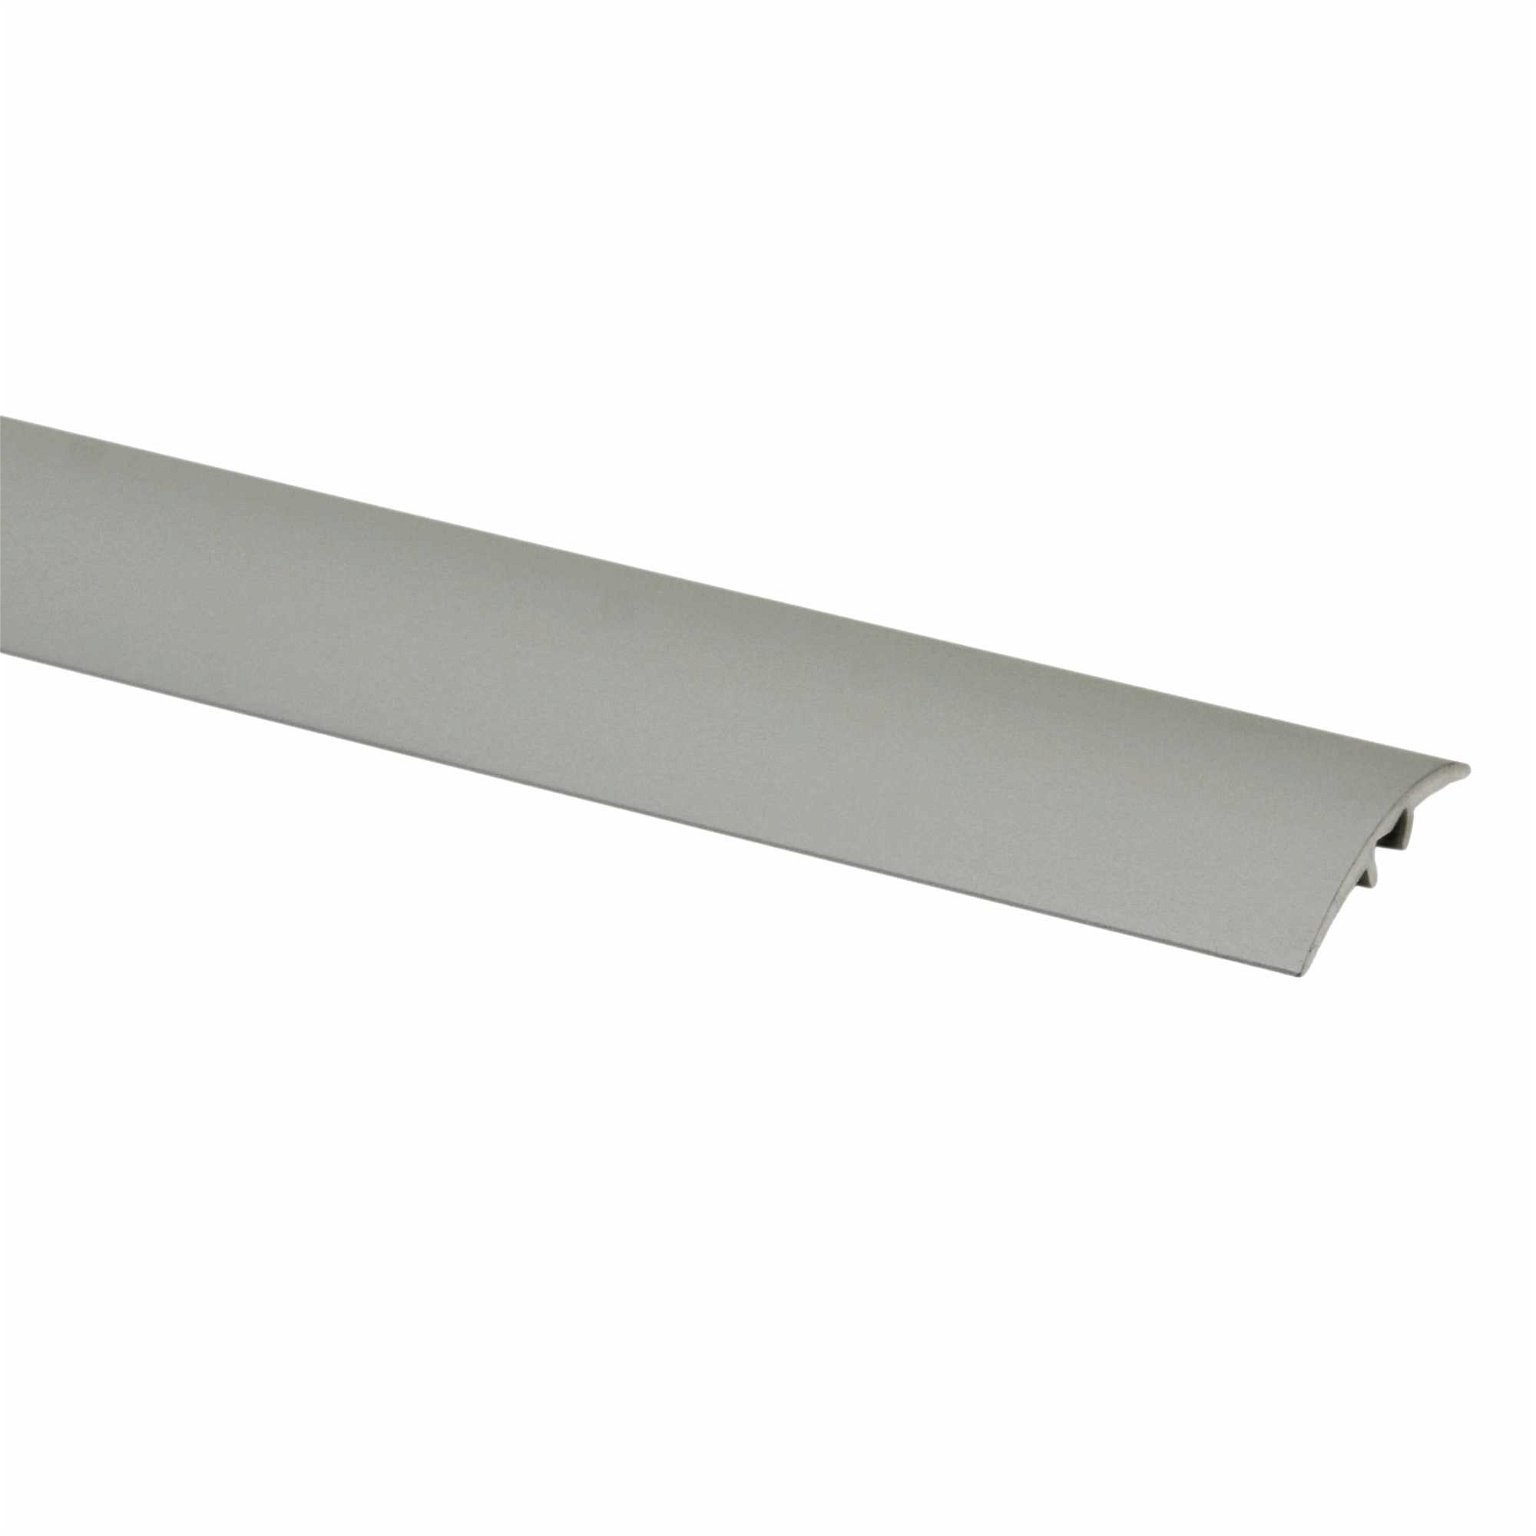 Aliumininė grindų juostelė PR3 A1, sidabro sp., 28 mm pločio, 186 cm ilgio - 1